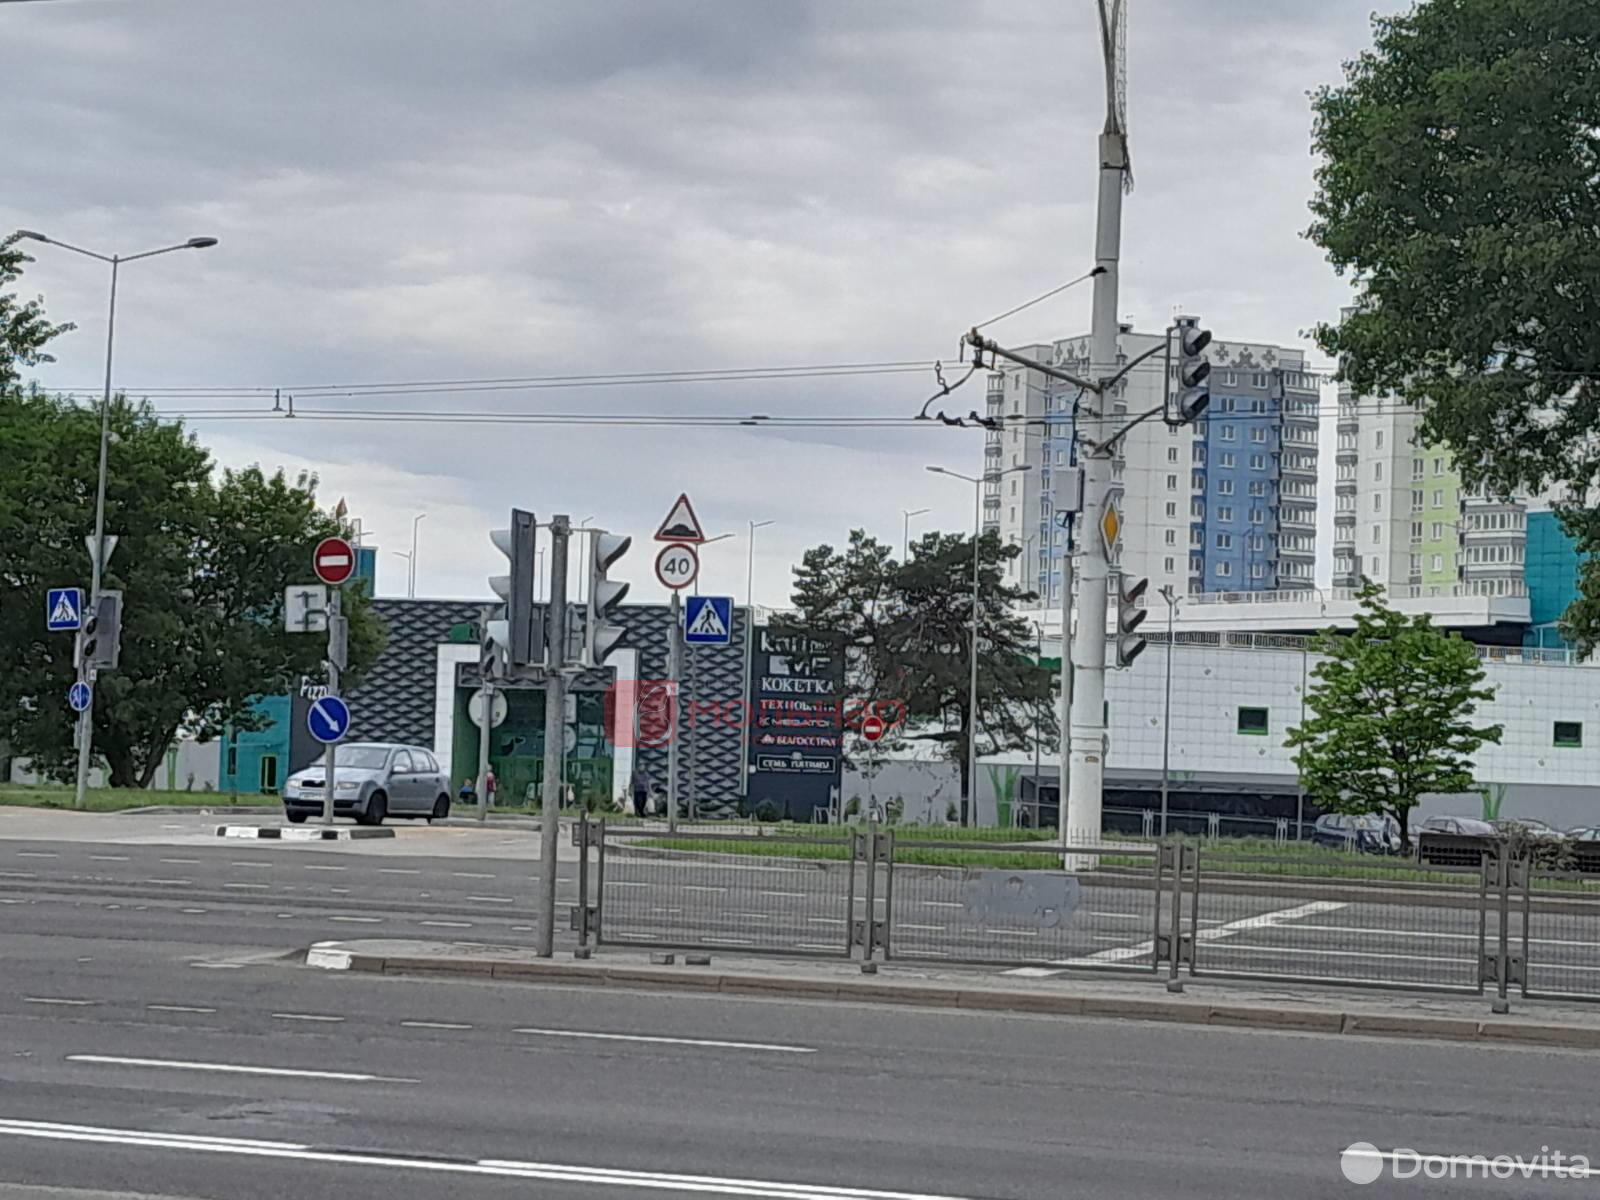 Аренда торговой точки на ул. Рудобельская, д. 3 в Минске, 1601EUR, код 965111 - фото 1